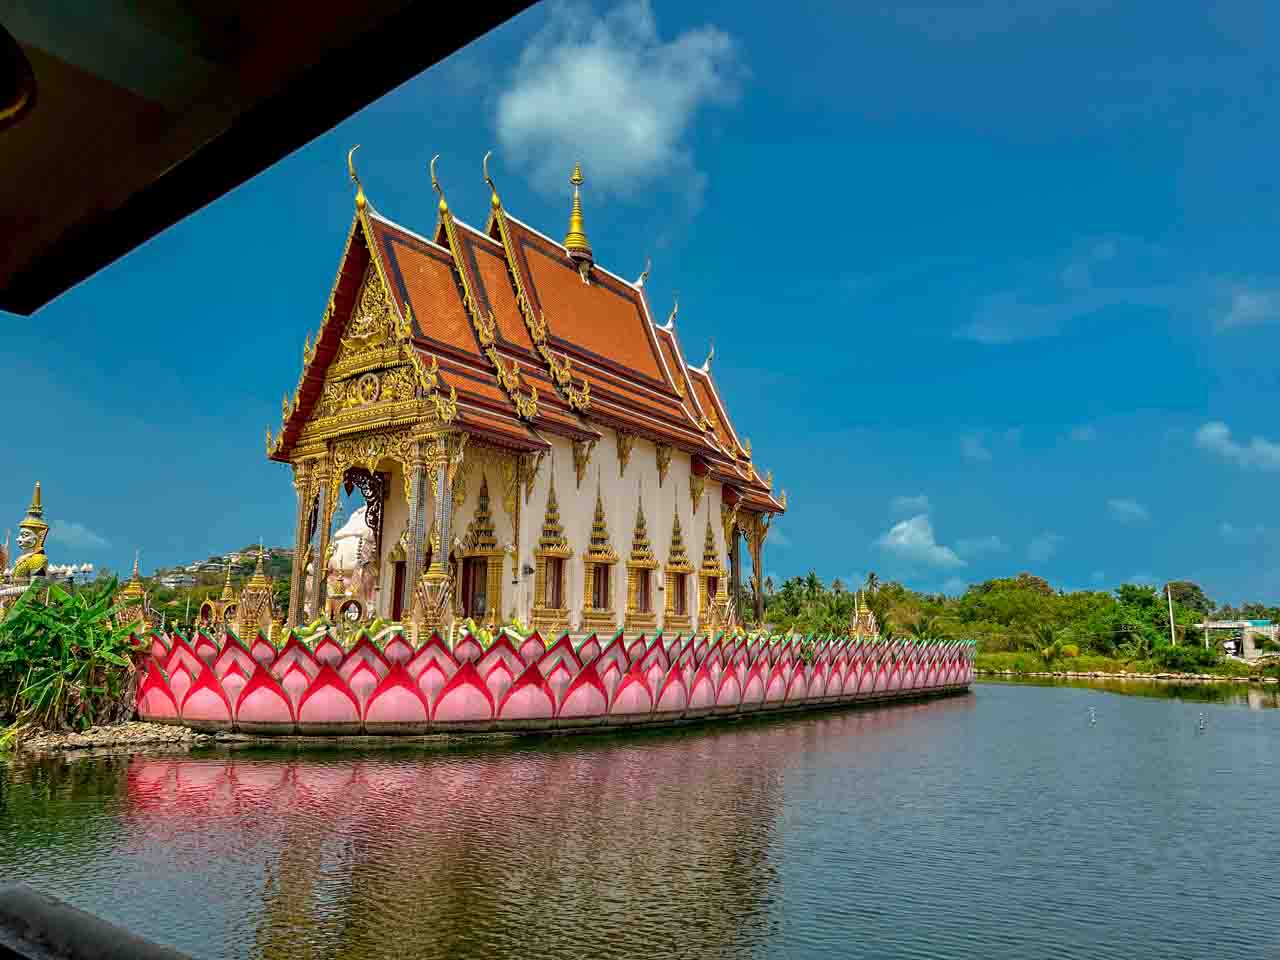 Visitar Koh Samui no mês de julho é uma das melhores opções do que fazer na Tailândia nesse período do ano.